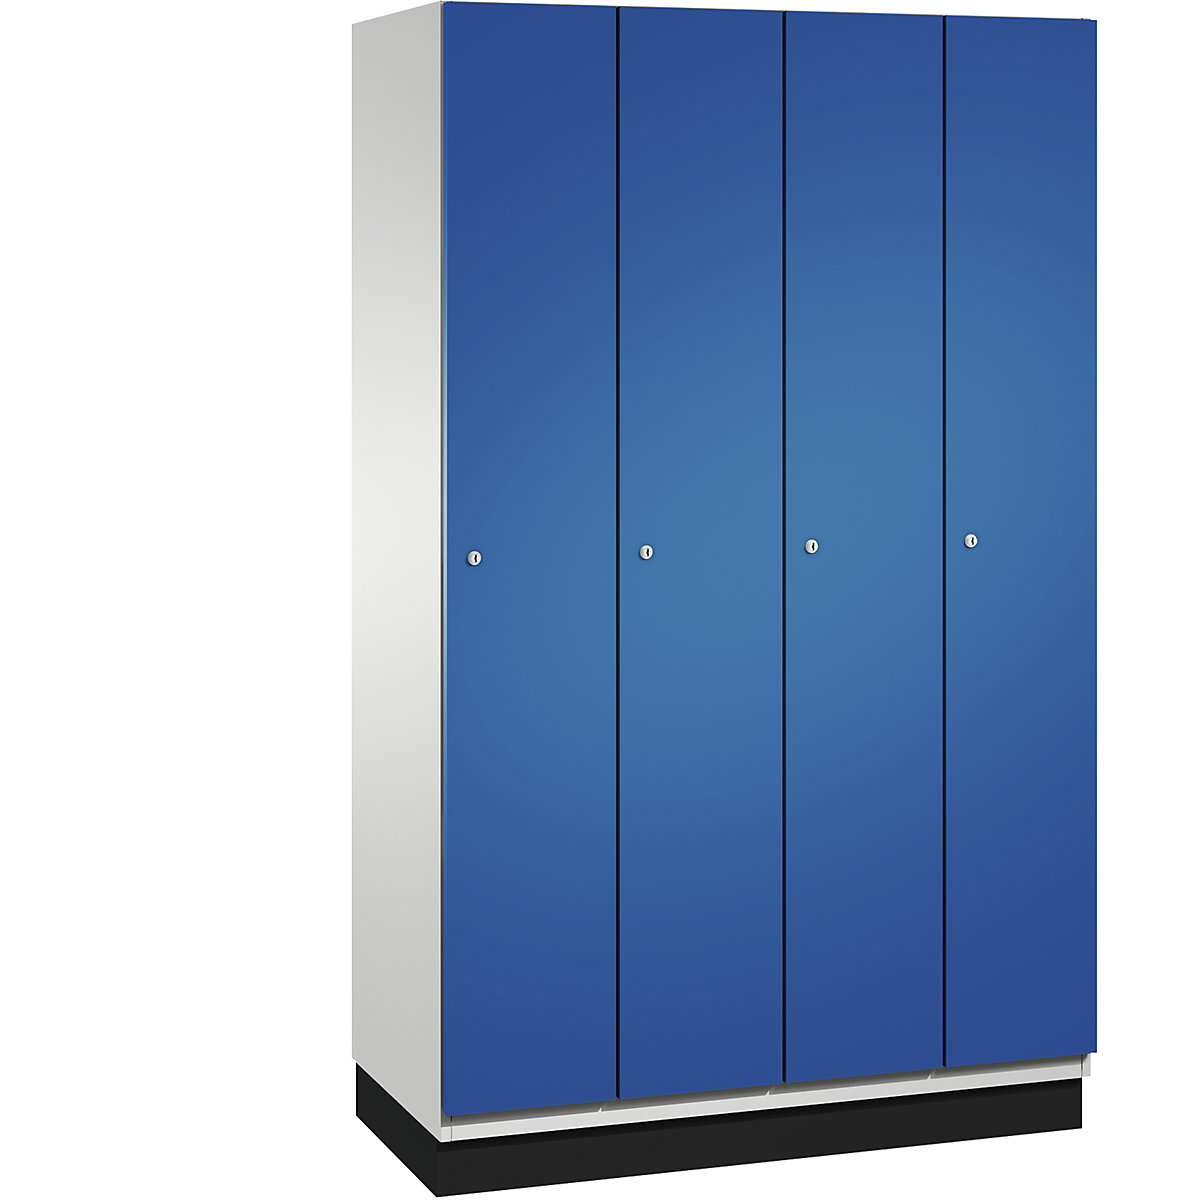 CAMBIO cloakroom locker with sheet steel doors – C+P, 4 compartments, 1200 mm wide, body light grey / door gentian blue-13